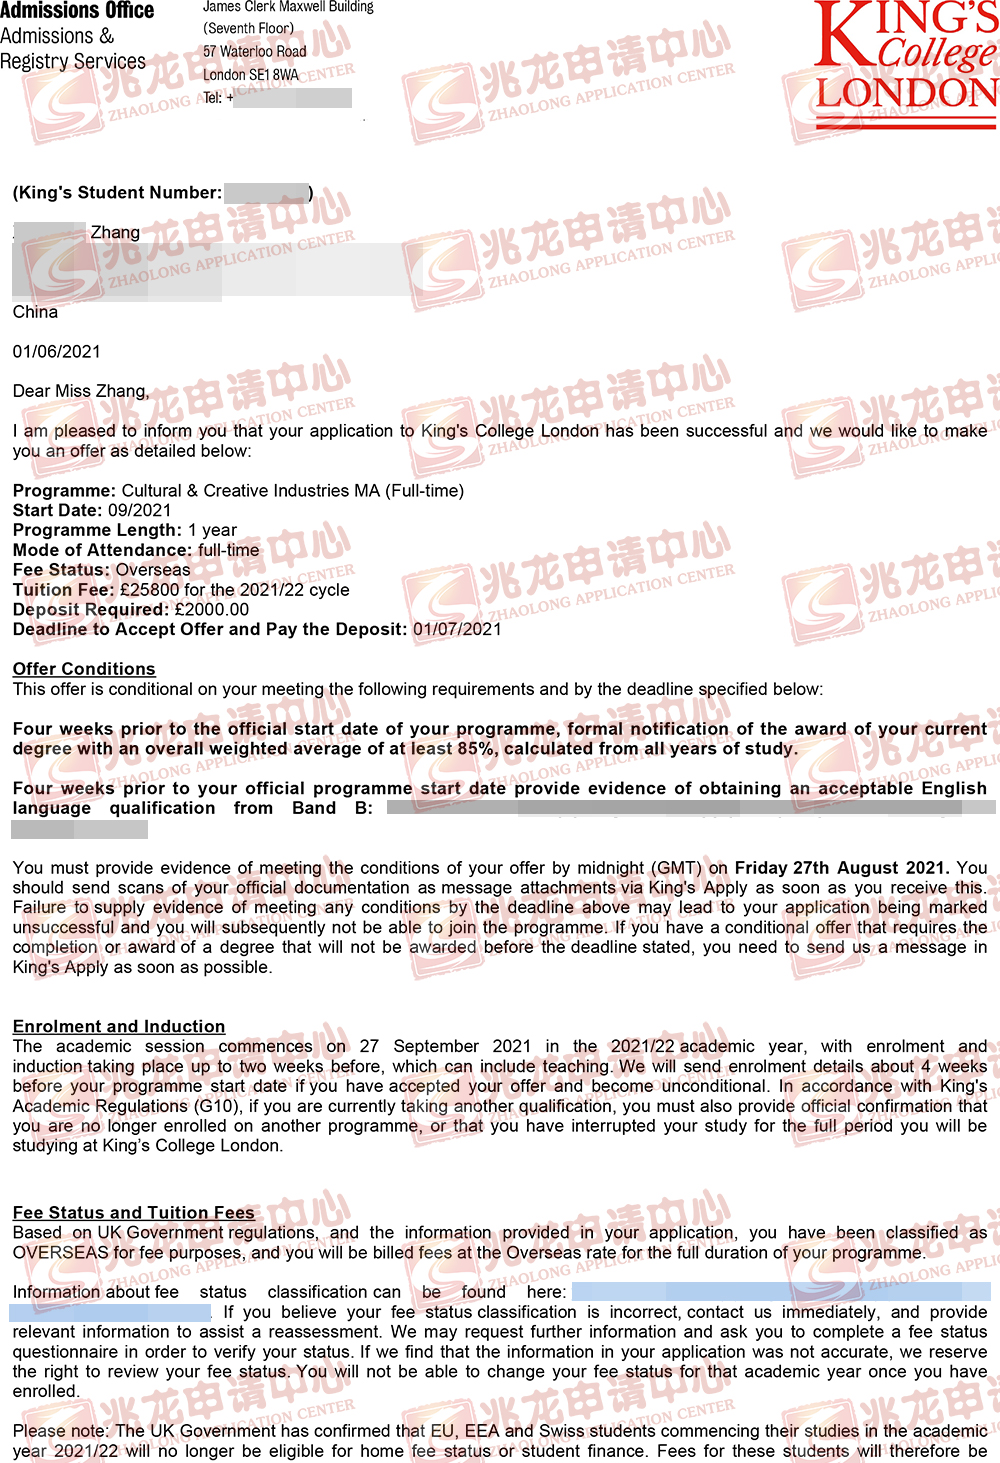 张xianghan-KCL-文化创意产业-硕士有条件offer-兆龙留学.jpg